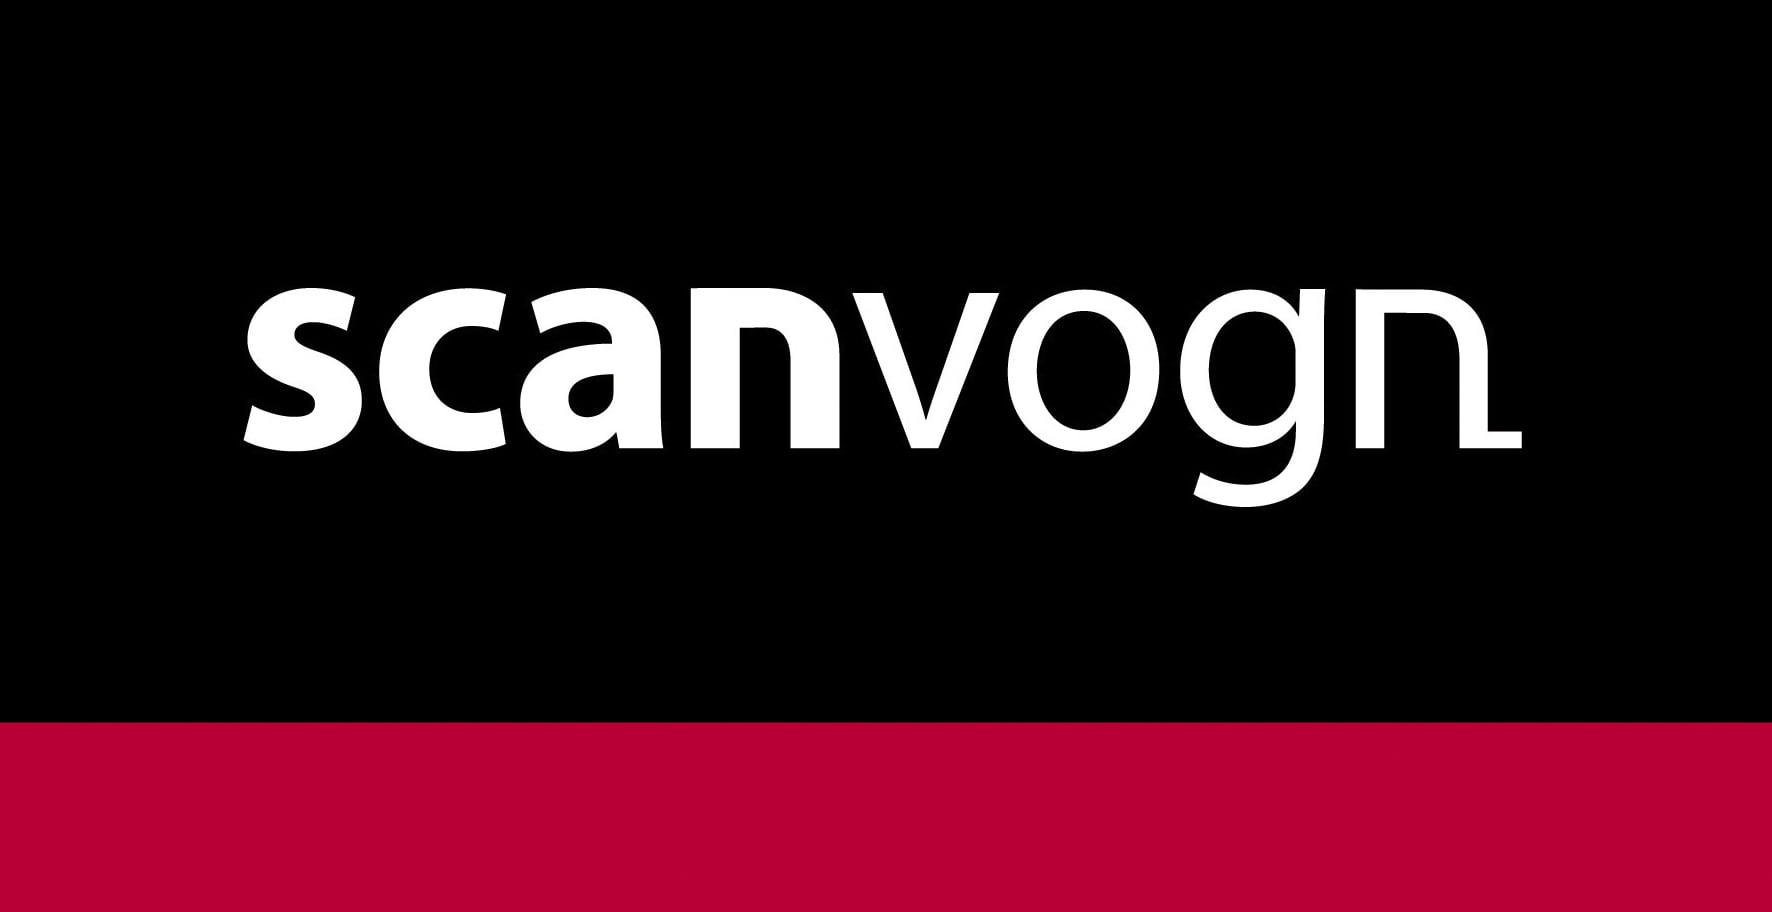 Scanvogn logo